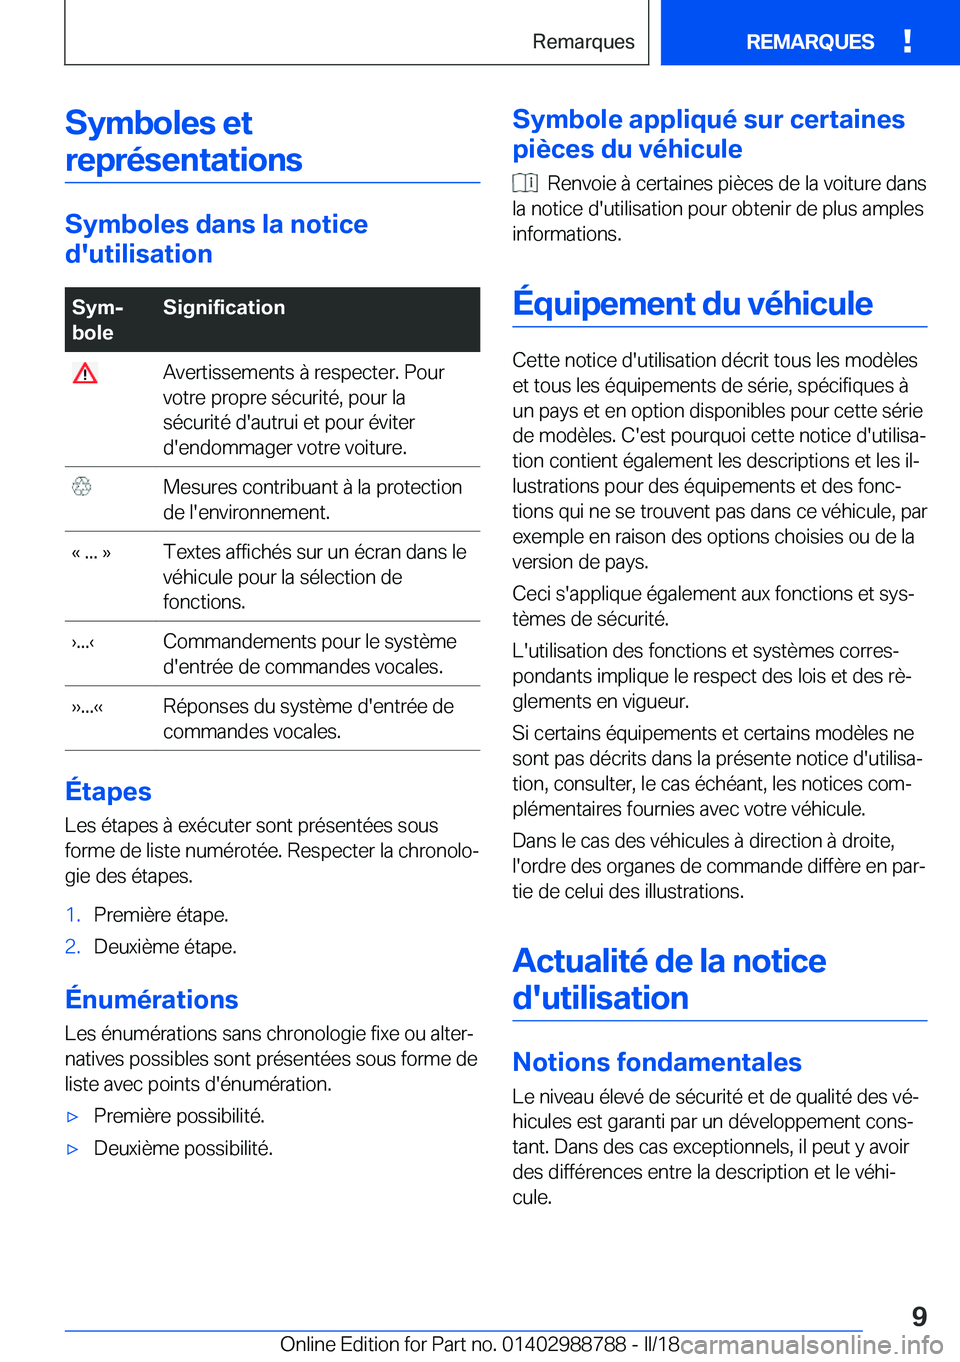 BMW X5 2018  Notices Demploi (in French) �S�y�m�b�o�l�e�s��e�t�r�e�p�r�é�s�e�n�t�a�t�i�o�n�s
�S�y�m�b�o�l�e�s��d�a�n�s��l�a��n�o�t�i�c�e
�d�'�u�t�i�l�i�s�a�t�i�o�n
�S�y�mj
�b�o�l�e�S�i�g�n�i�f�i�c�a�t�i�o�n� �A�v�e�r�t�i�s�s�e�m�e�